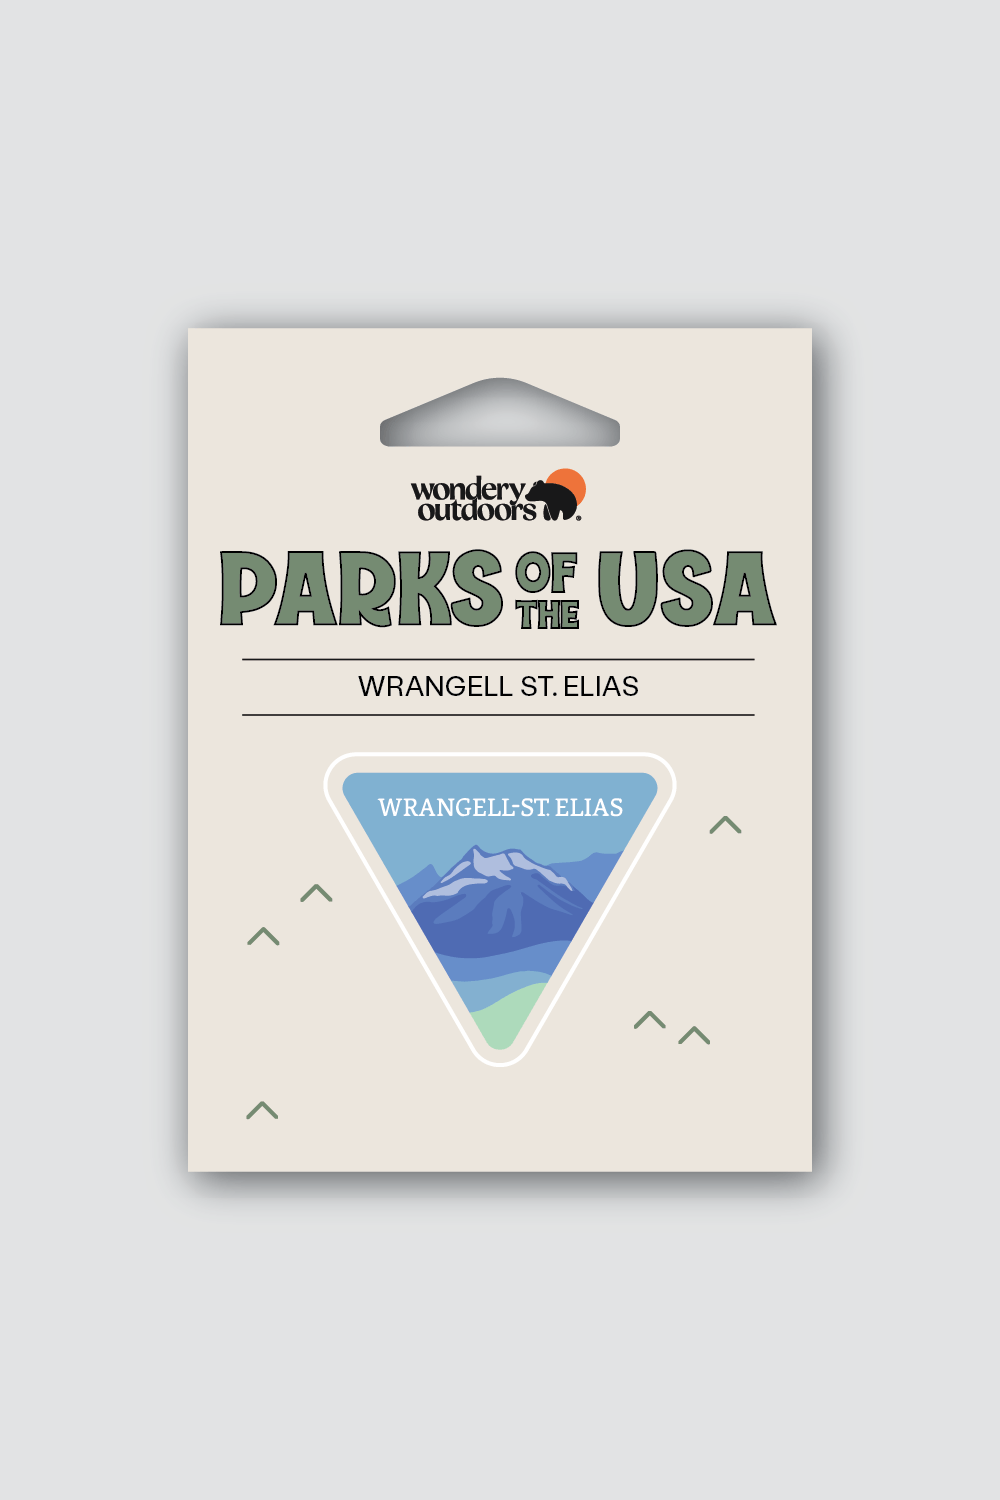 #national park_wrangell st. elias _USA National Parks souvenir sticker gift sets